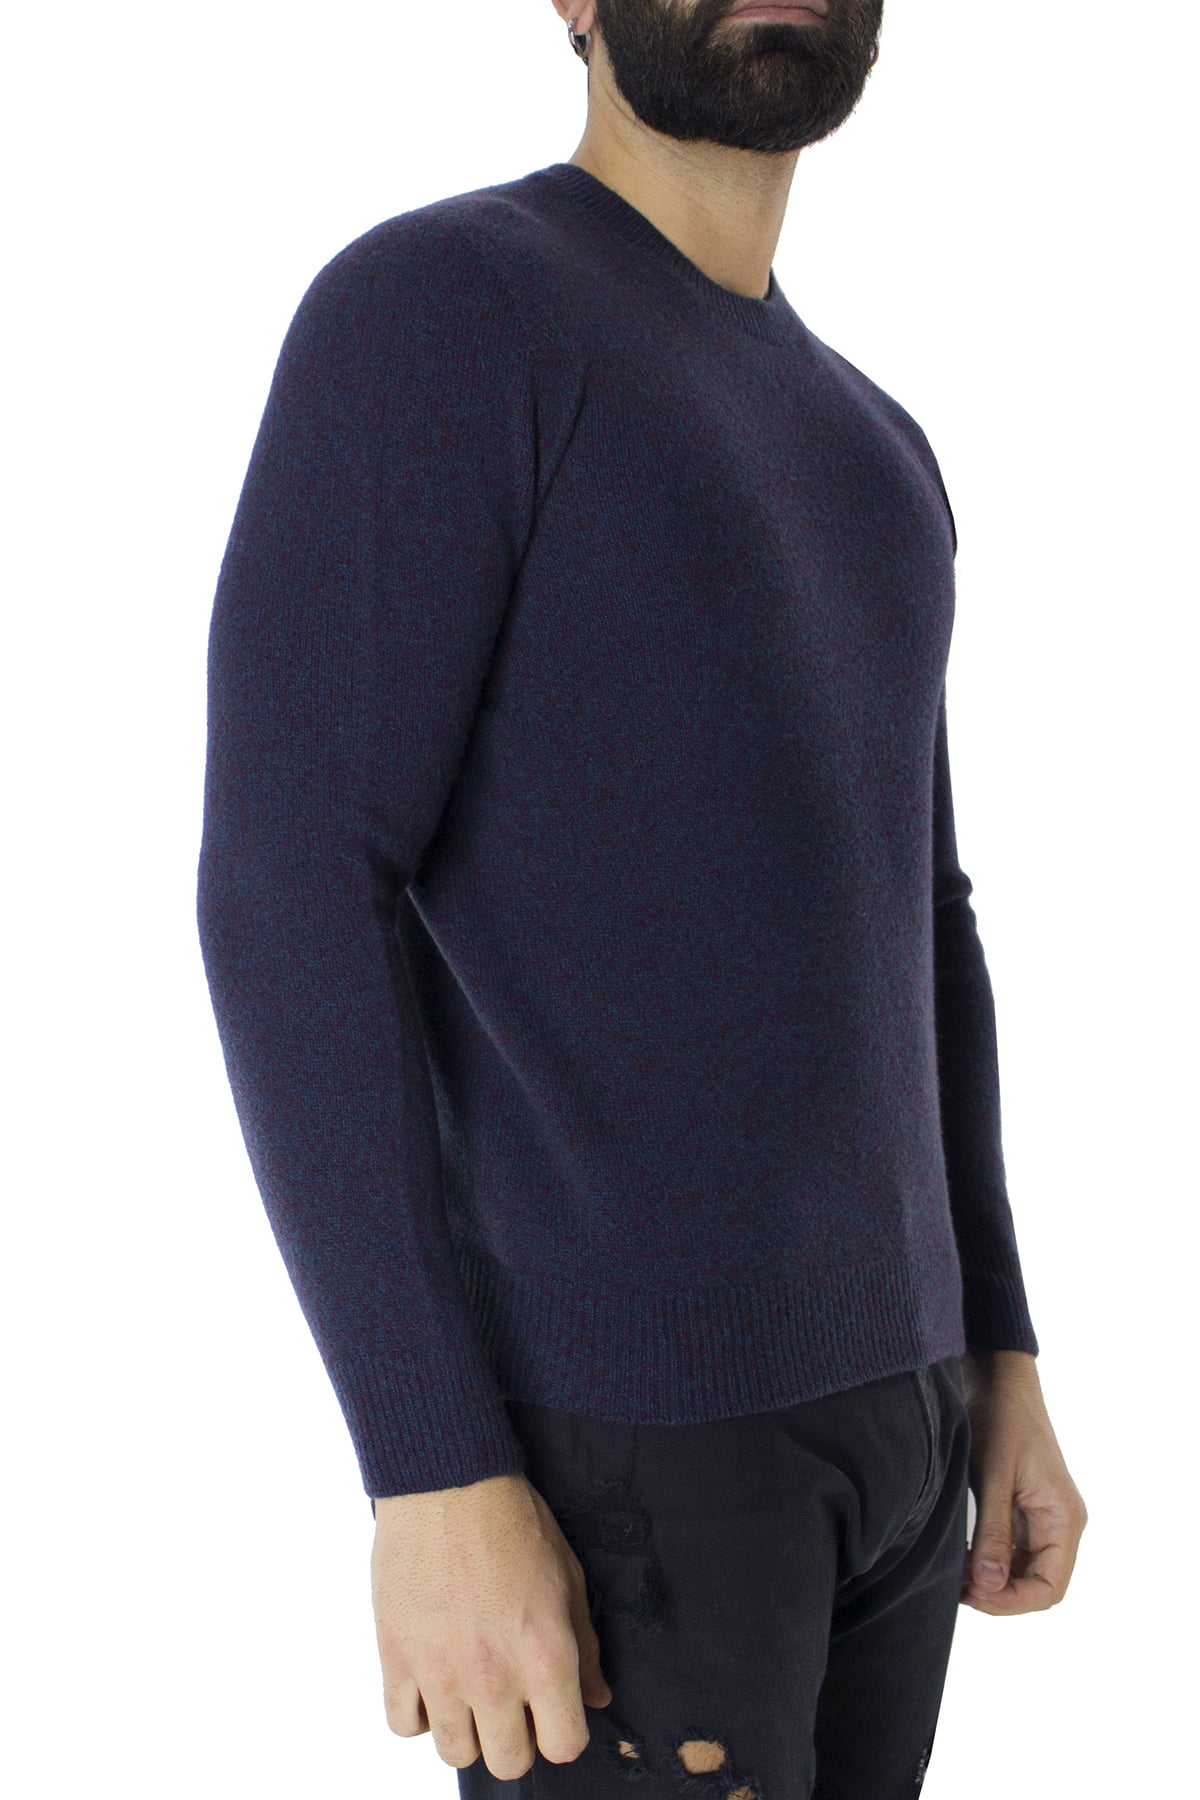 Maglione uomo Girocollo azzurro effetto melange bordeaux in lana 100% slim fit